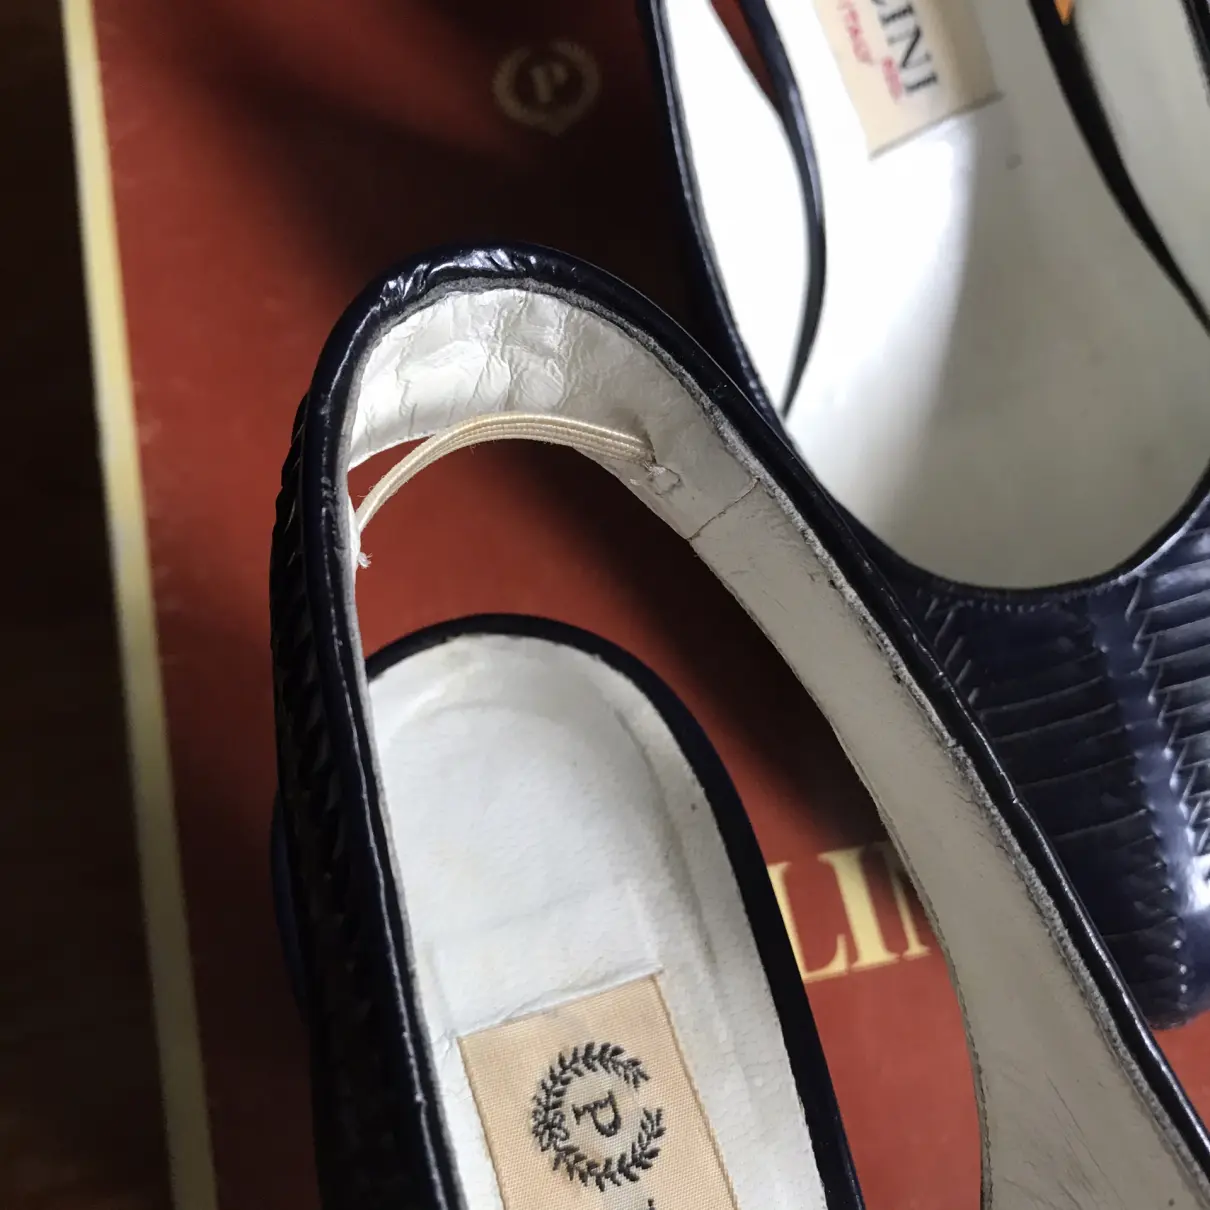 Leather sandals Pollini - Vintage